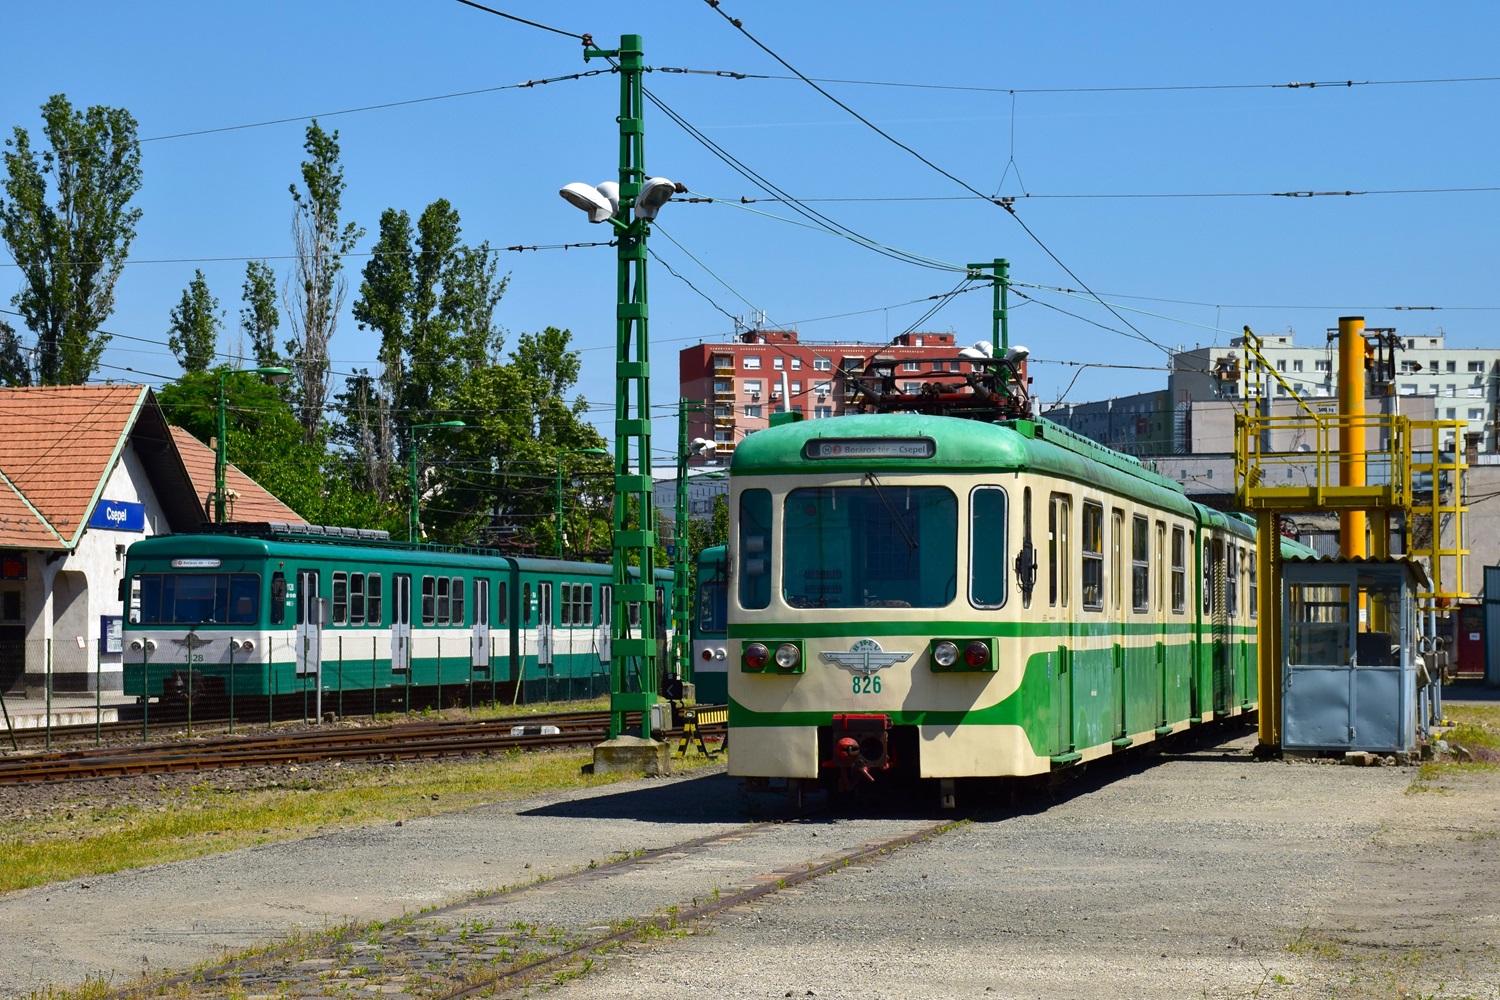 Будапешт, M IX A № 826; Будапешт — Интерурбан (HÉV); Будапешт — Трамвайные депо